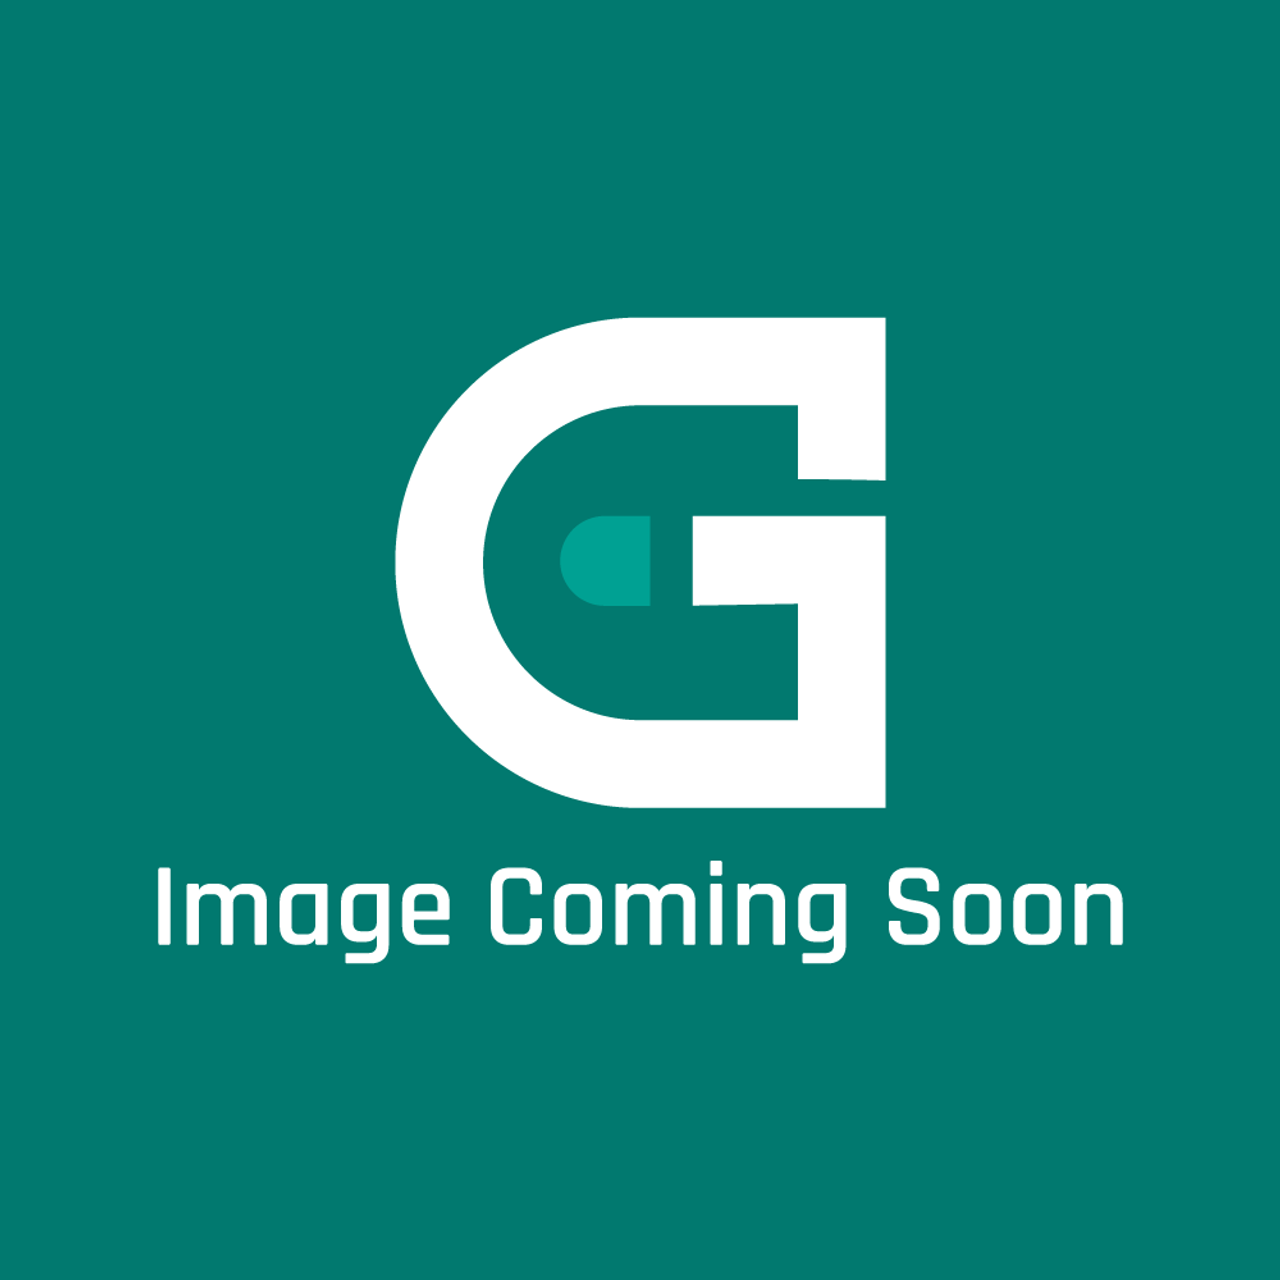 Groen N87708 - Hook Swivel Mc Master - Image Coming Soon!